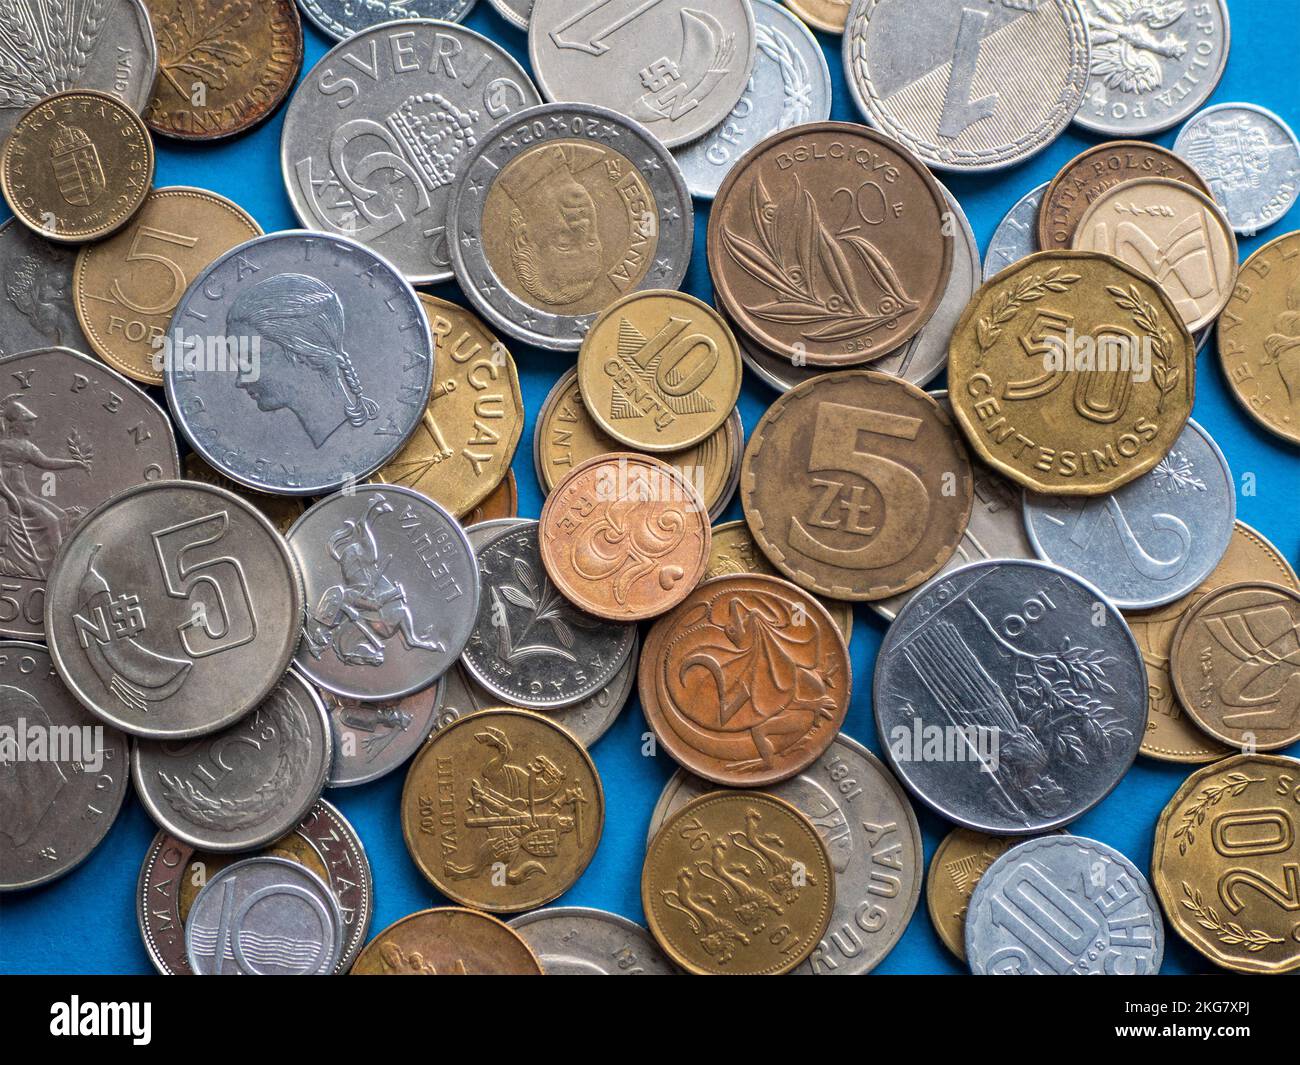 Cumulo di monete internazionali vecchie e moderne, primo piano. Concetto di numismatica, collezione di monete, forma di hobby Foto Stock